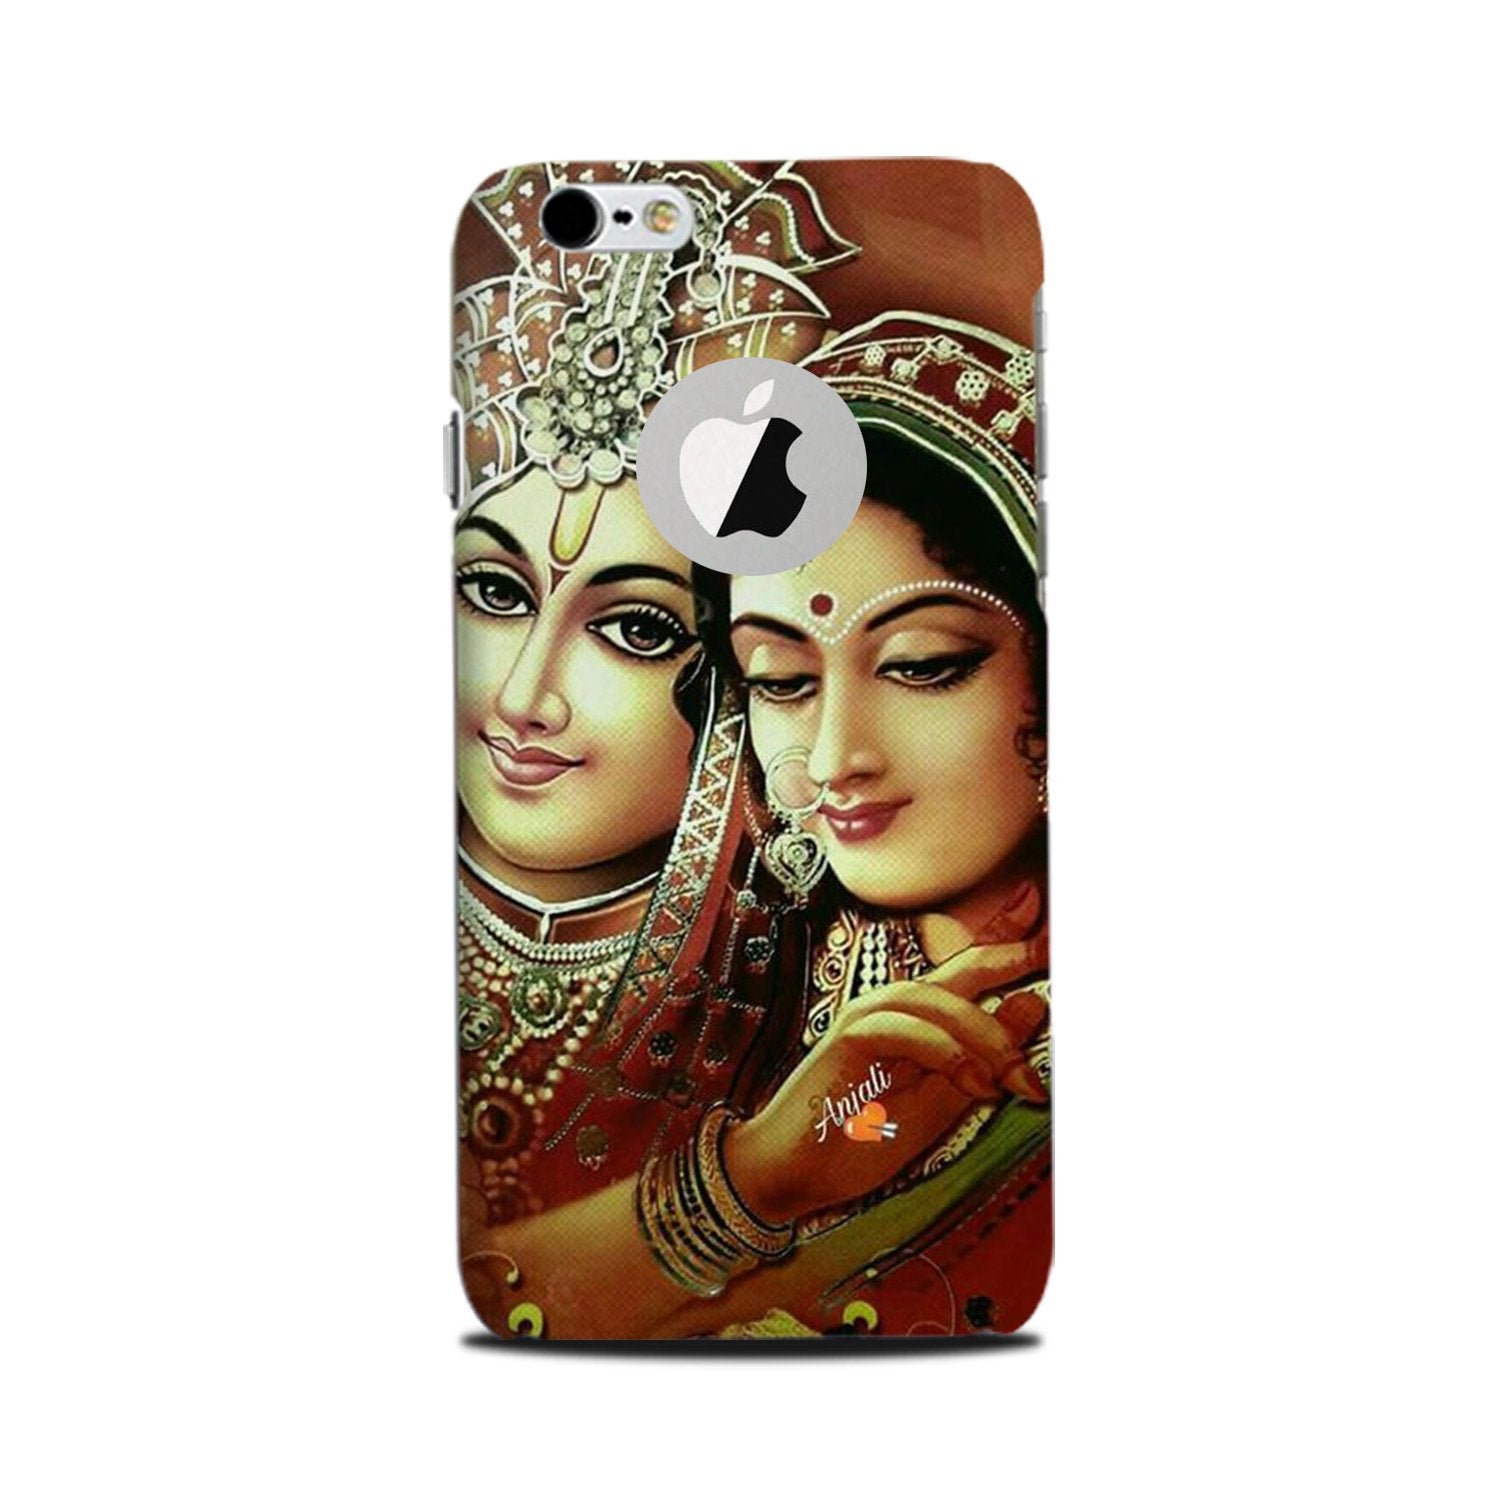 Radha Krishna Case for iPhone 6 Plus / 6s Plus logo cut  (Design No. 289)